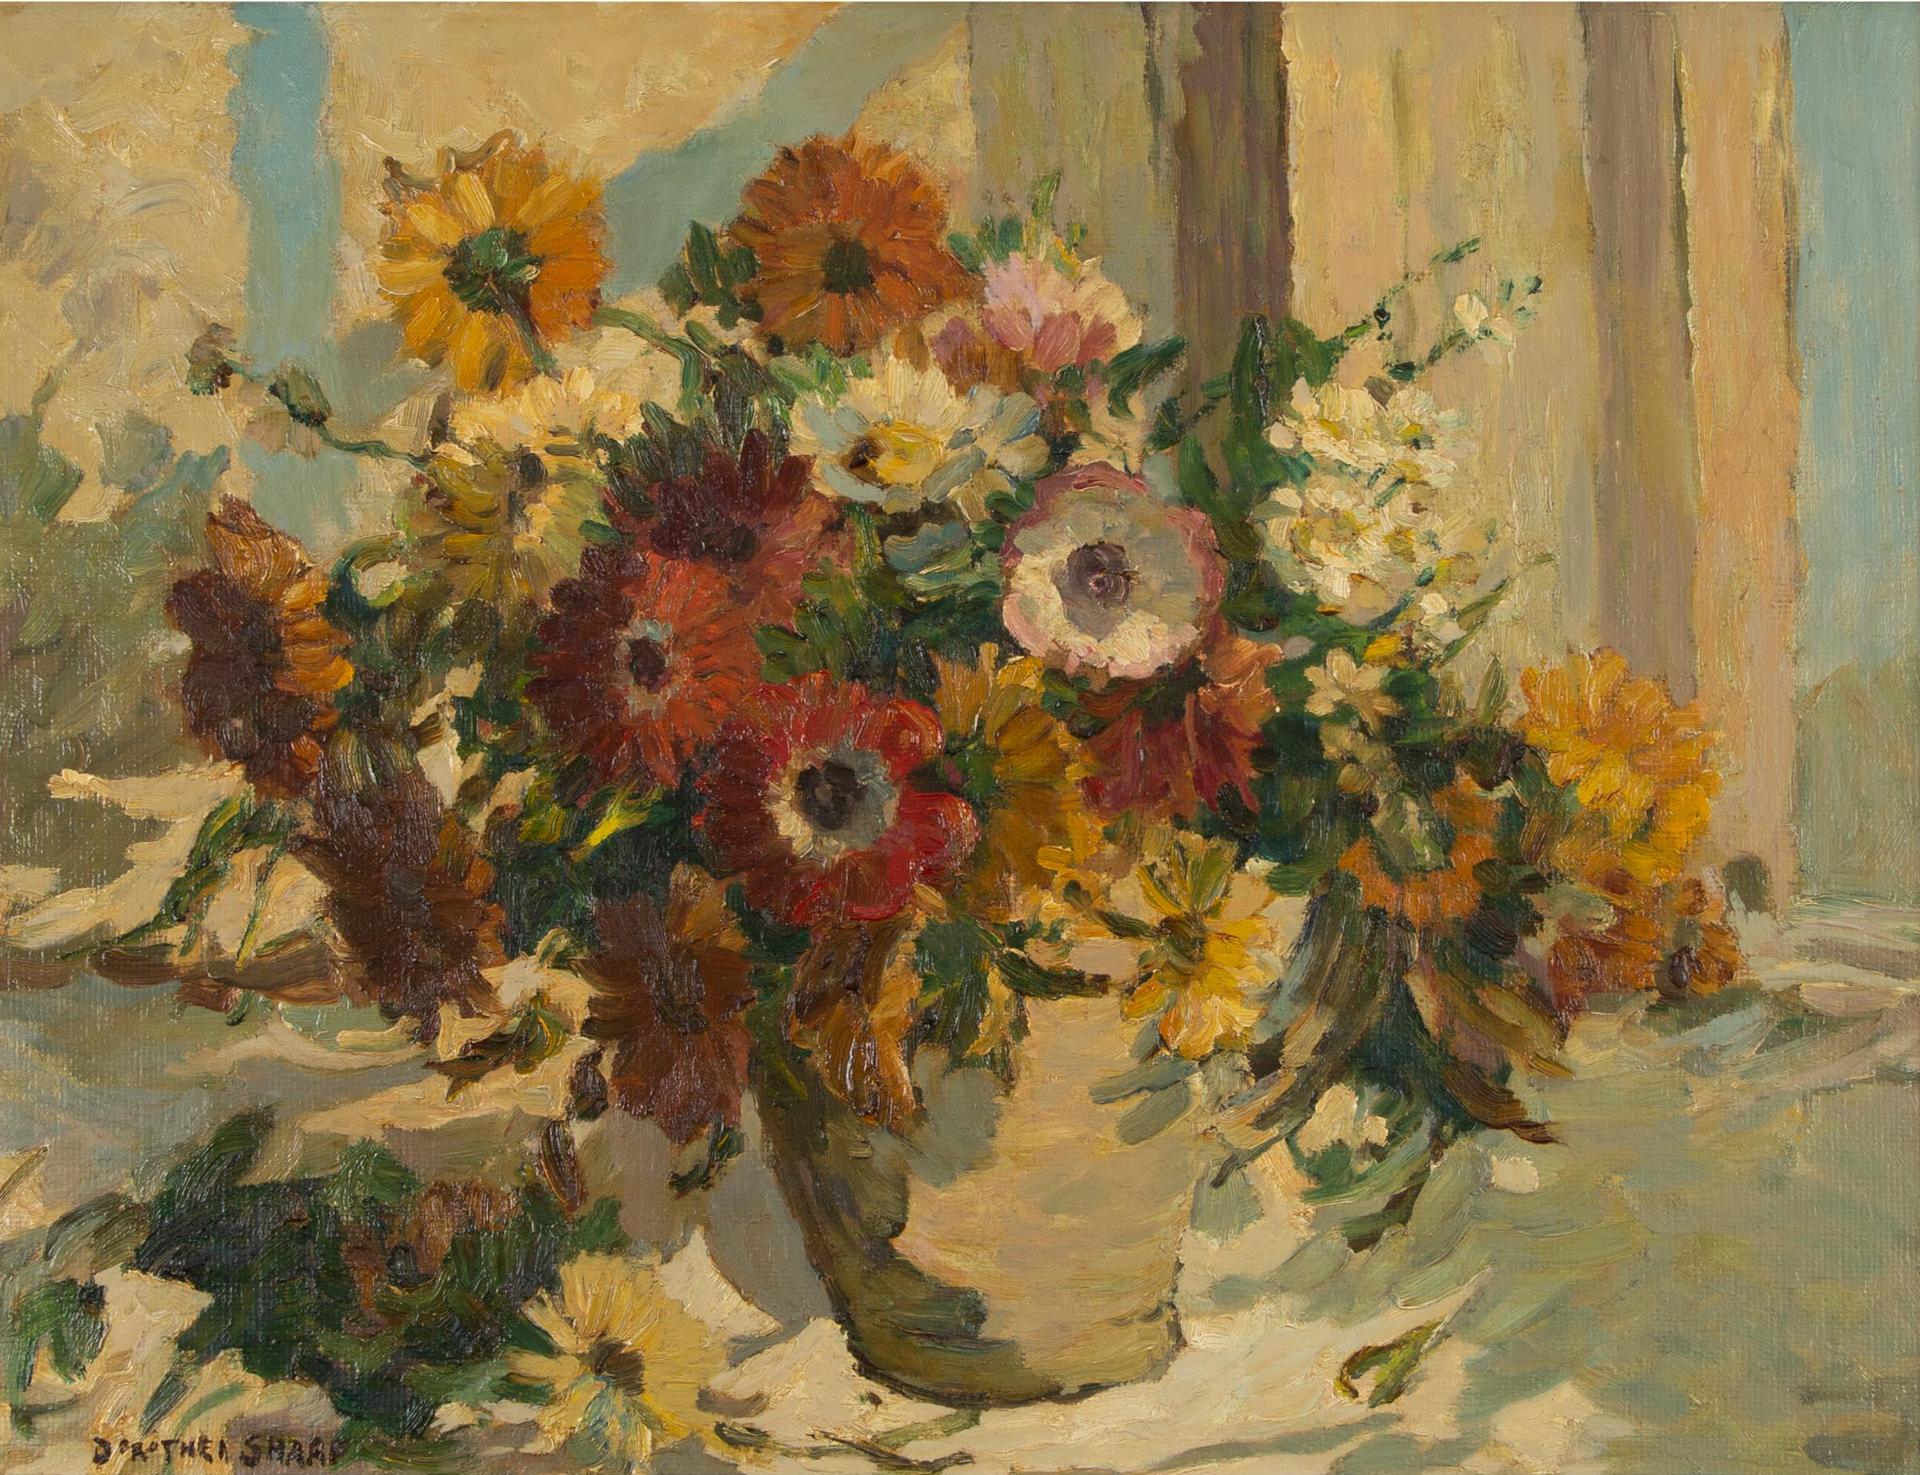 Dorothea Sharp (1874-1955) - A Sunny Morning